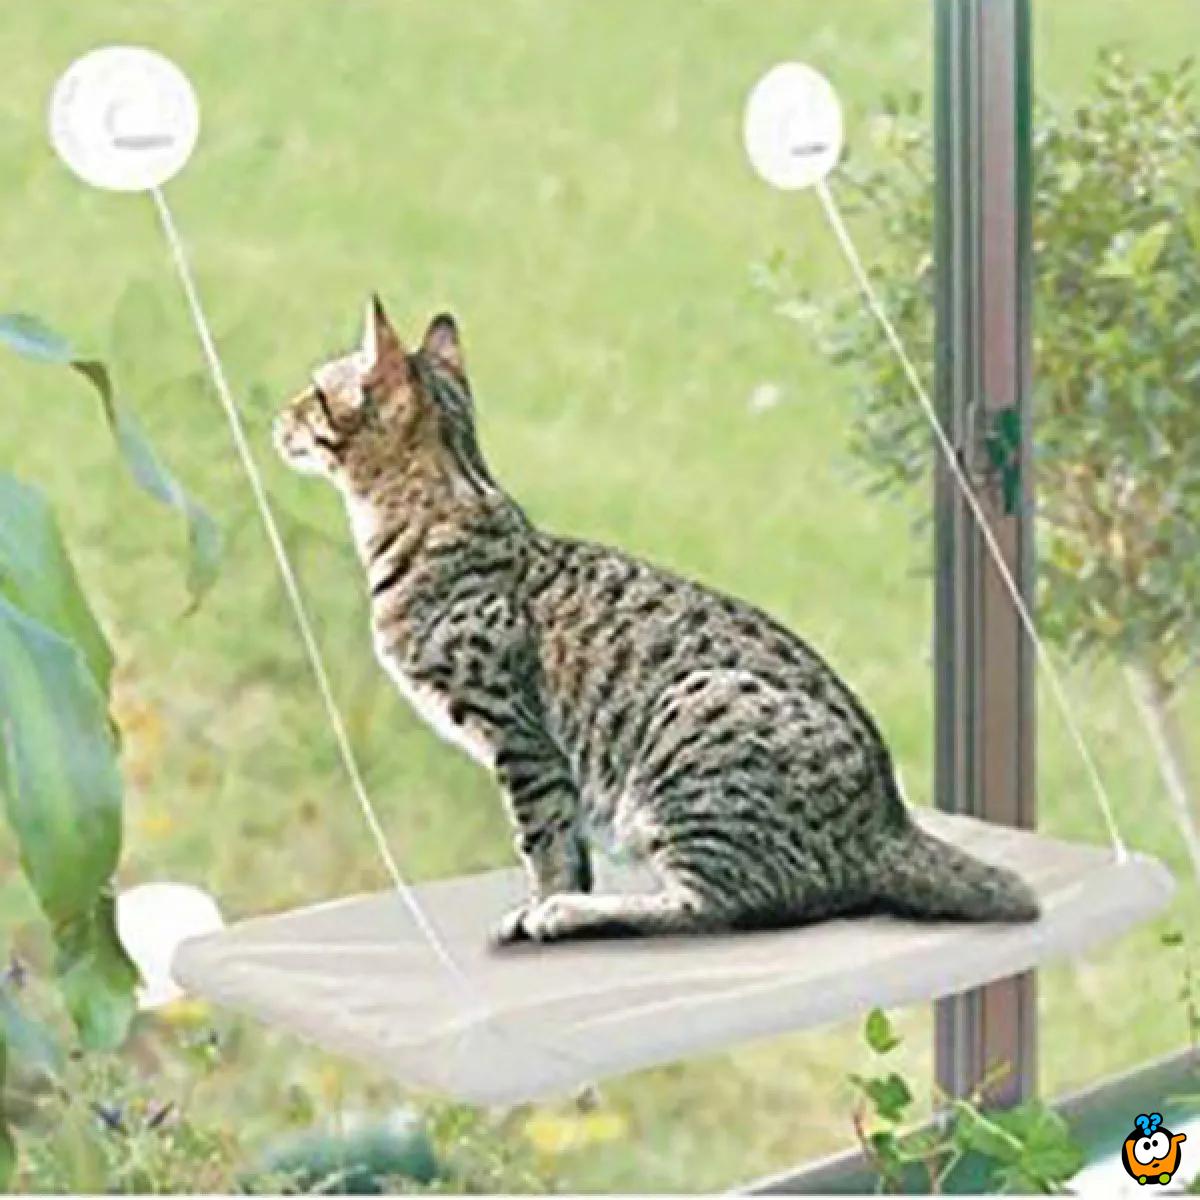 Ležaljka za mace koja se kači na prozor